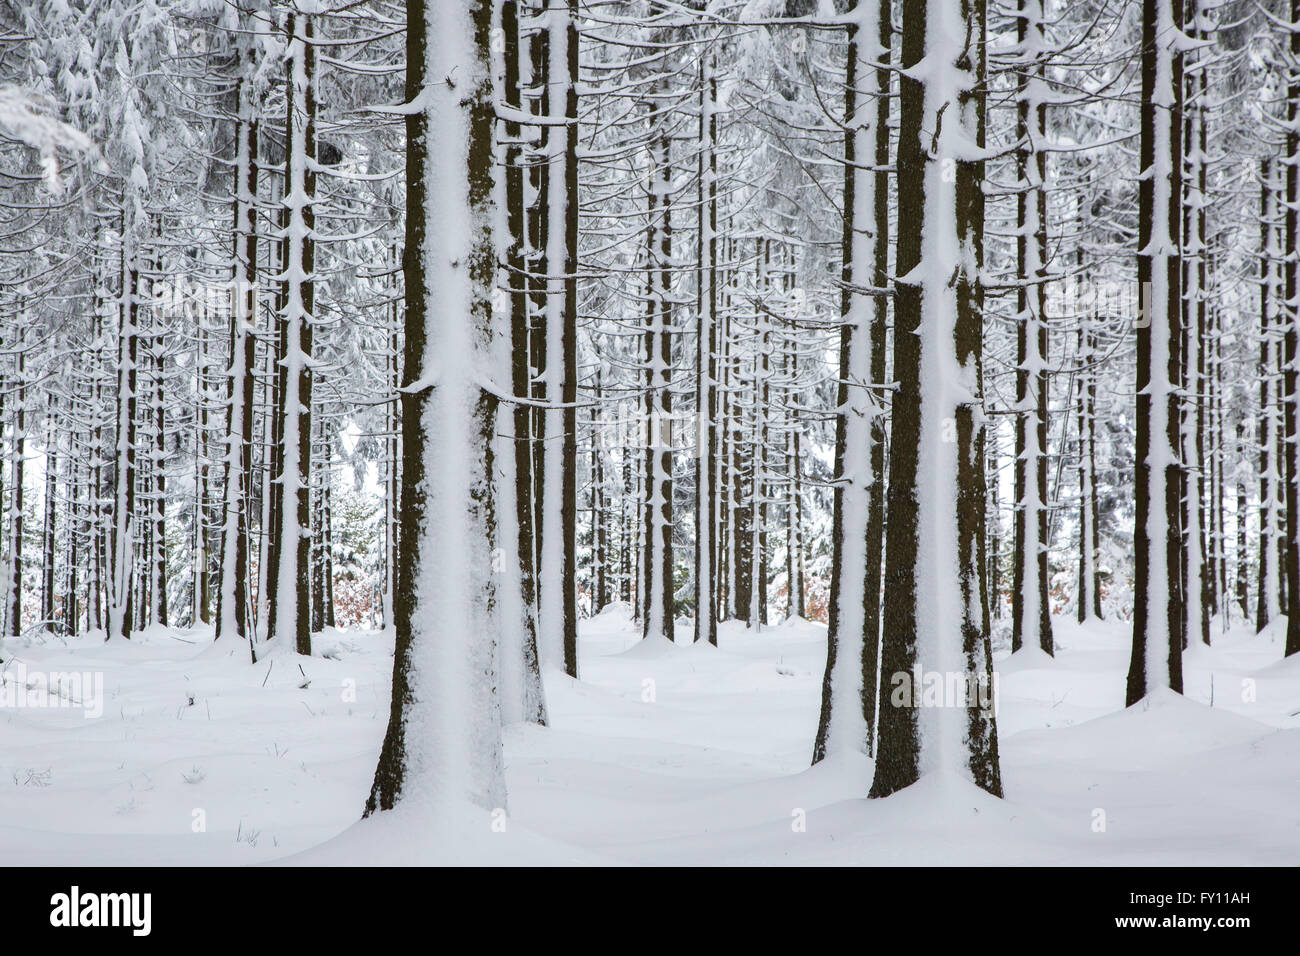 Des troncs de pins dans les forêts de conifères recouverts de neige en hiver dans les Hautes Fagnes / Hautes Fagnes, Ardennes Belges, Belgique Banque D'Images